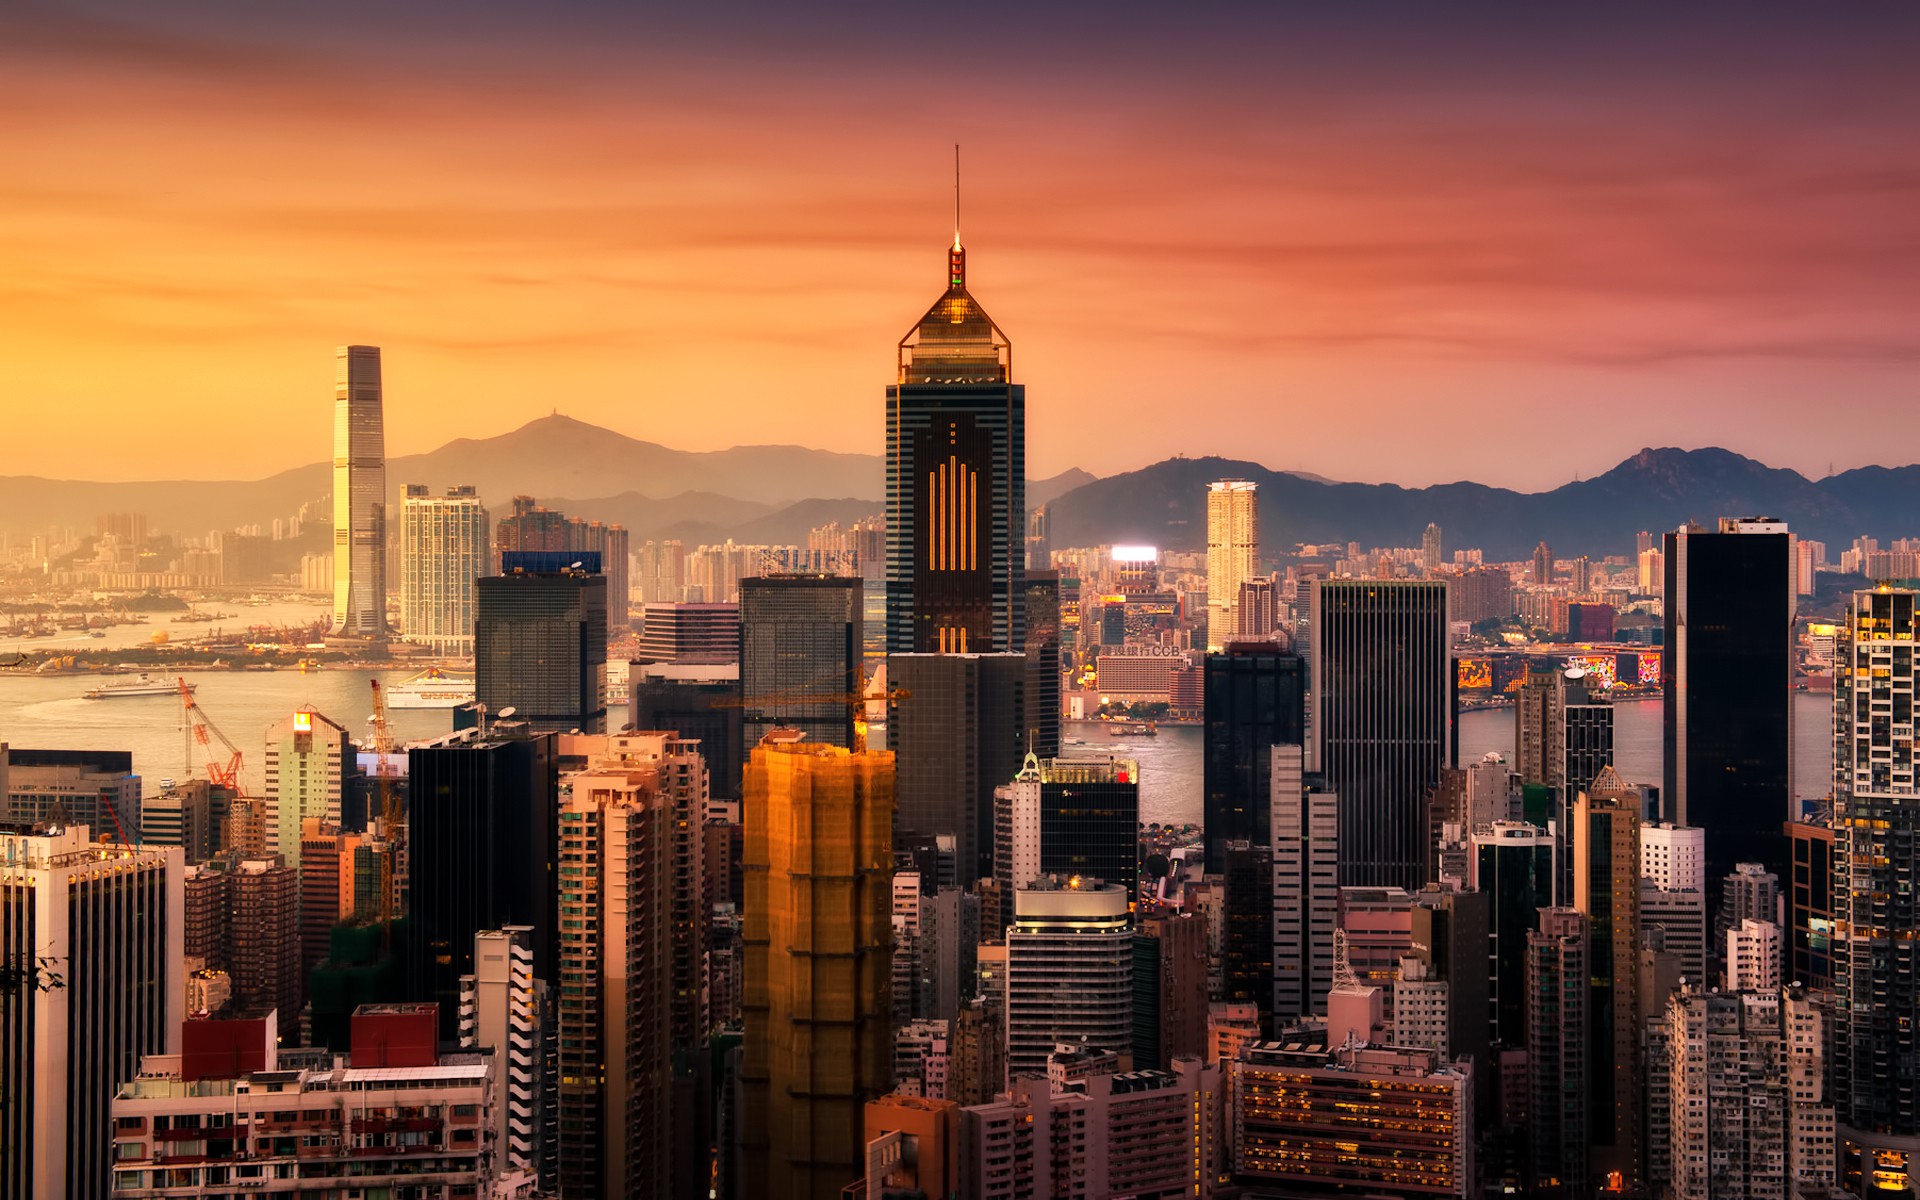 Hong Kong , HD Wallpaper & Backgrounds